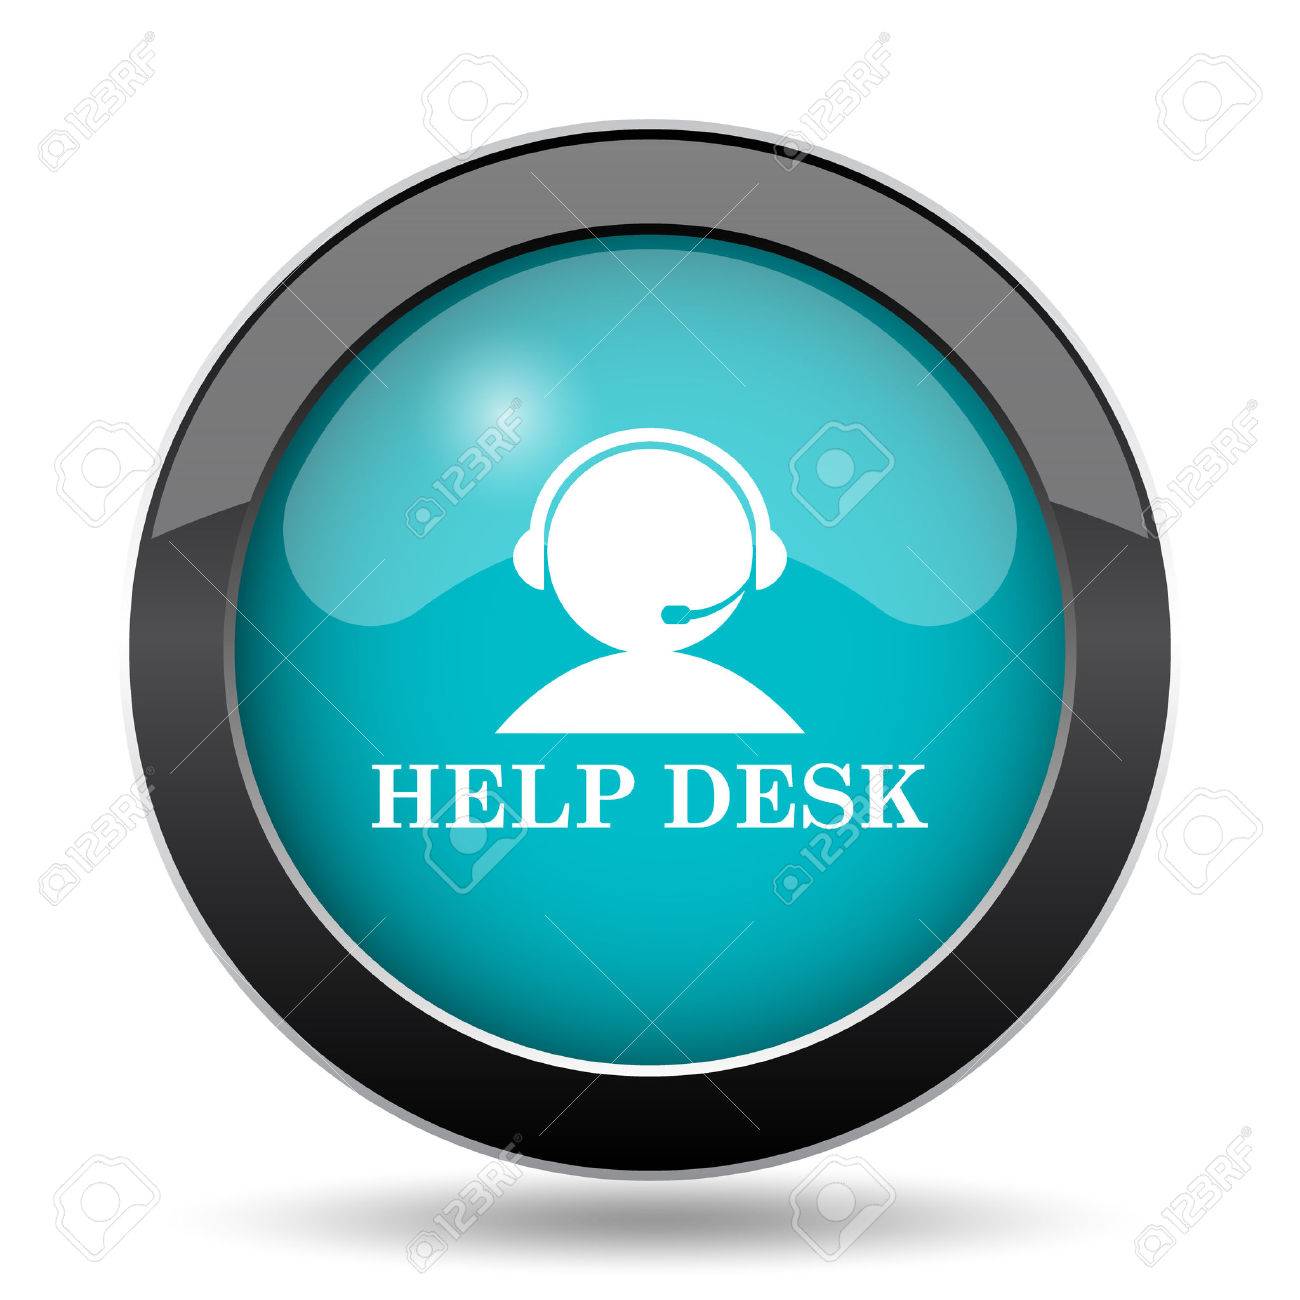 Helpdesk icon. internet button on white background. stock 